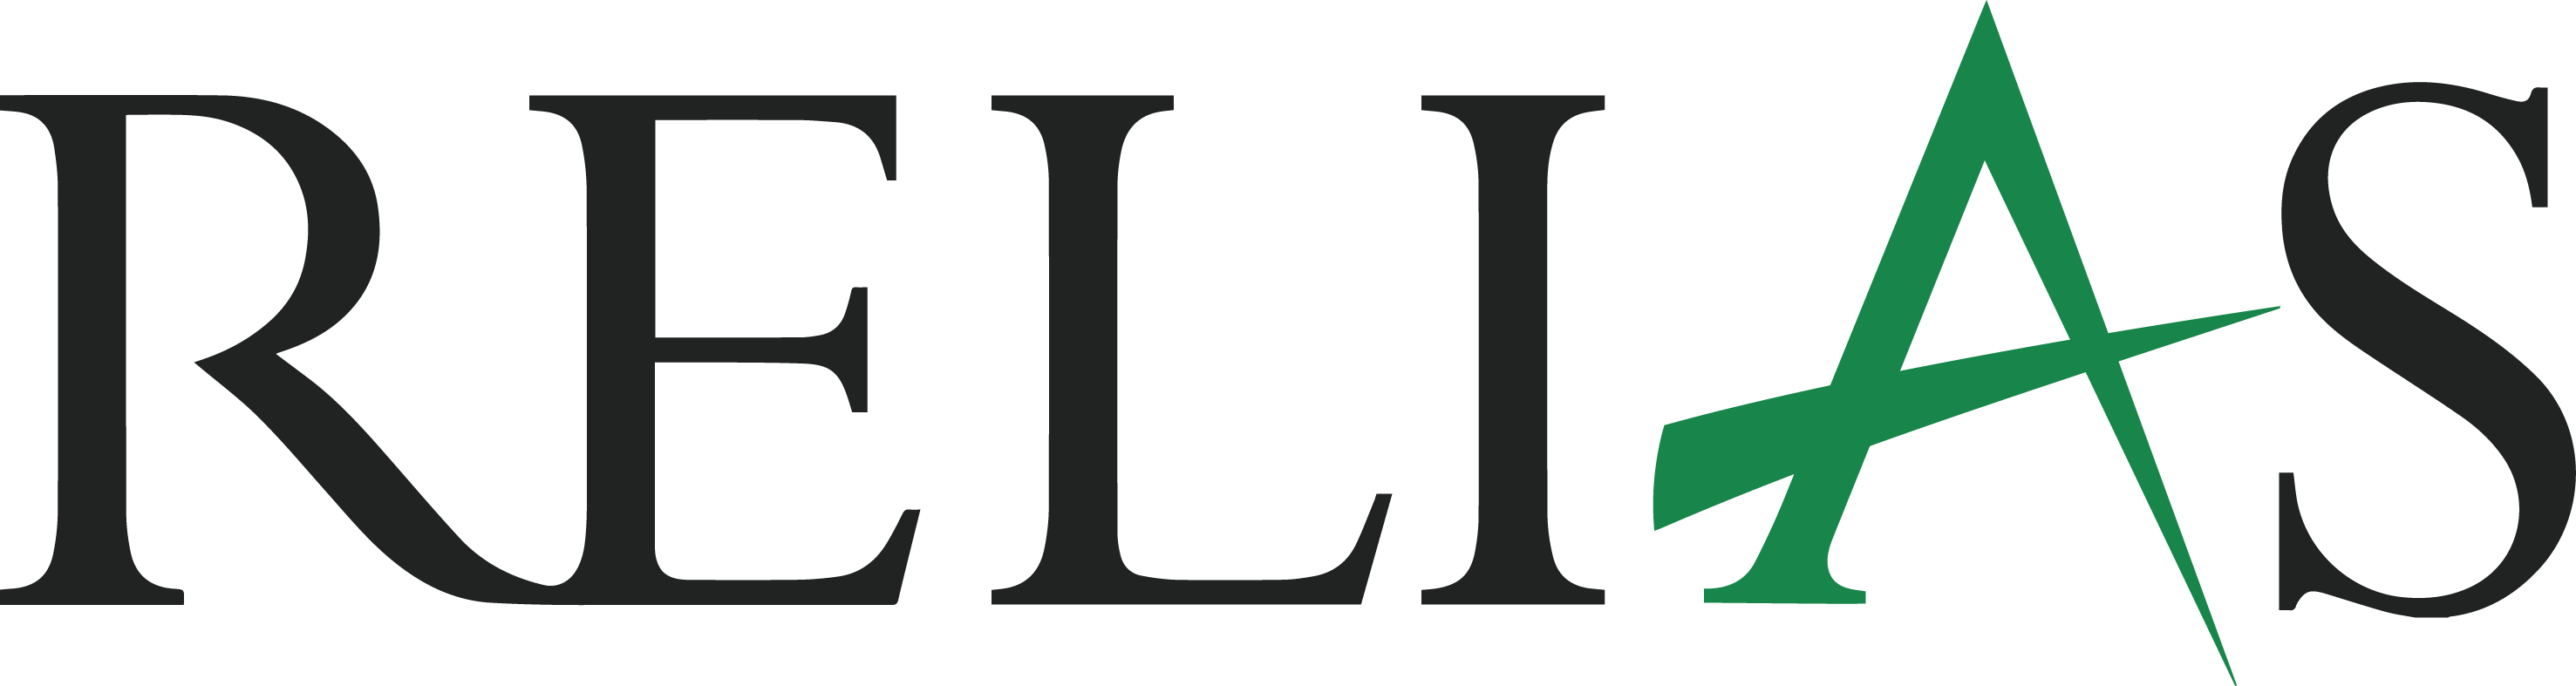 Relias logo